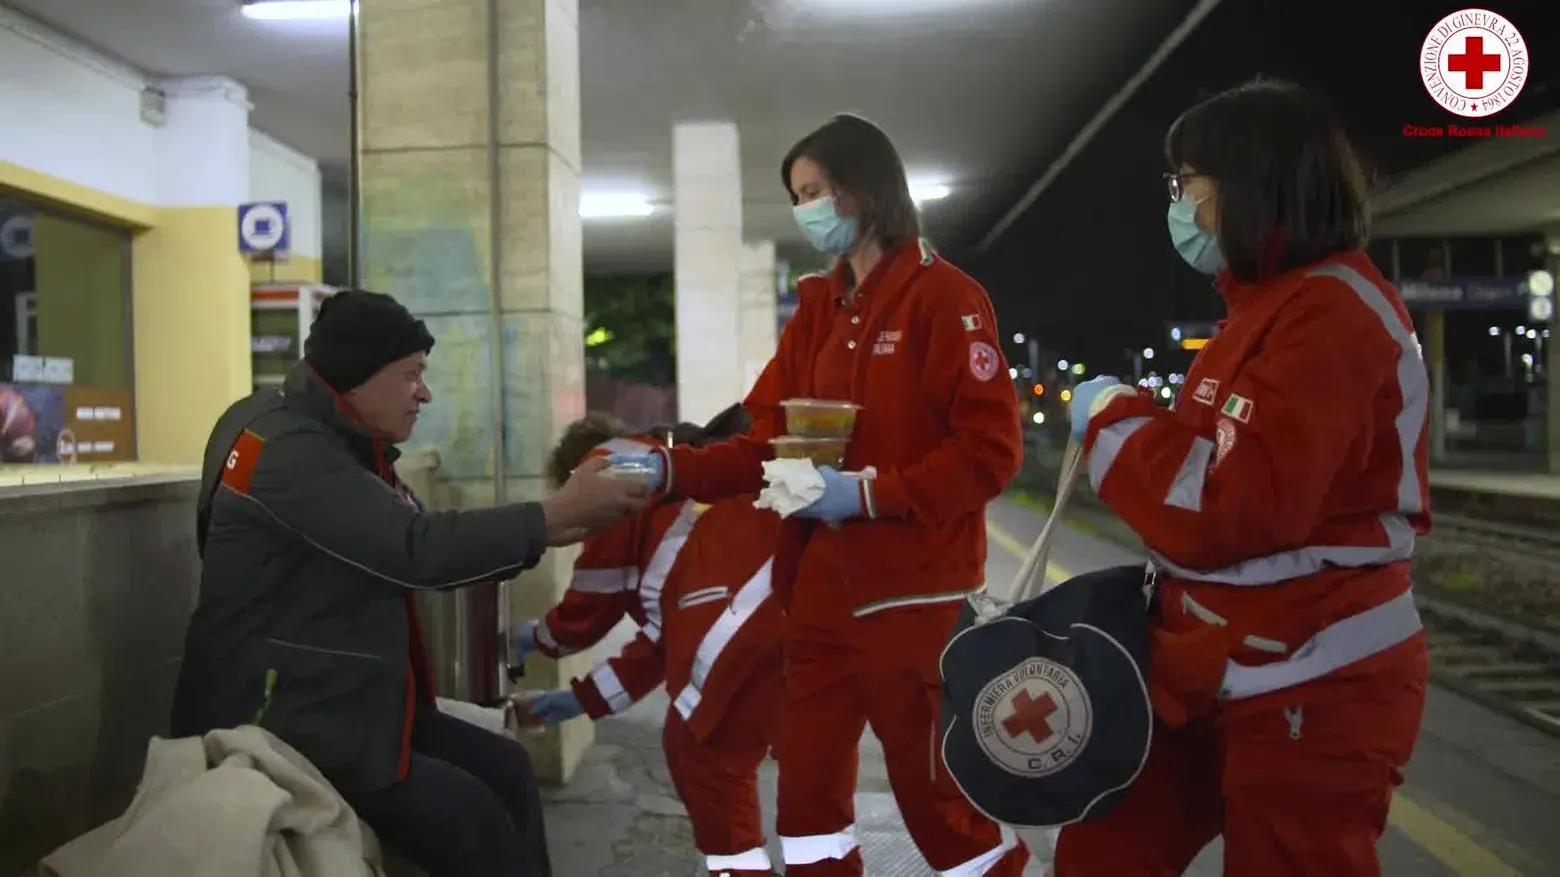 La Croce Rossa di Merate è in prima linea per aiutare le persone in difficoltà